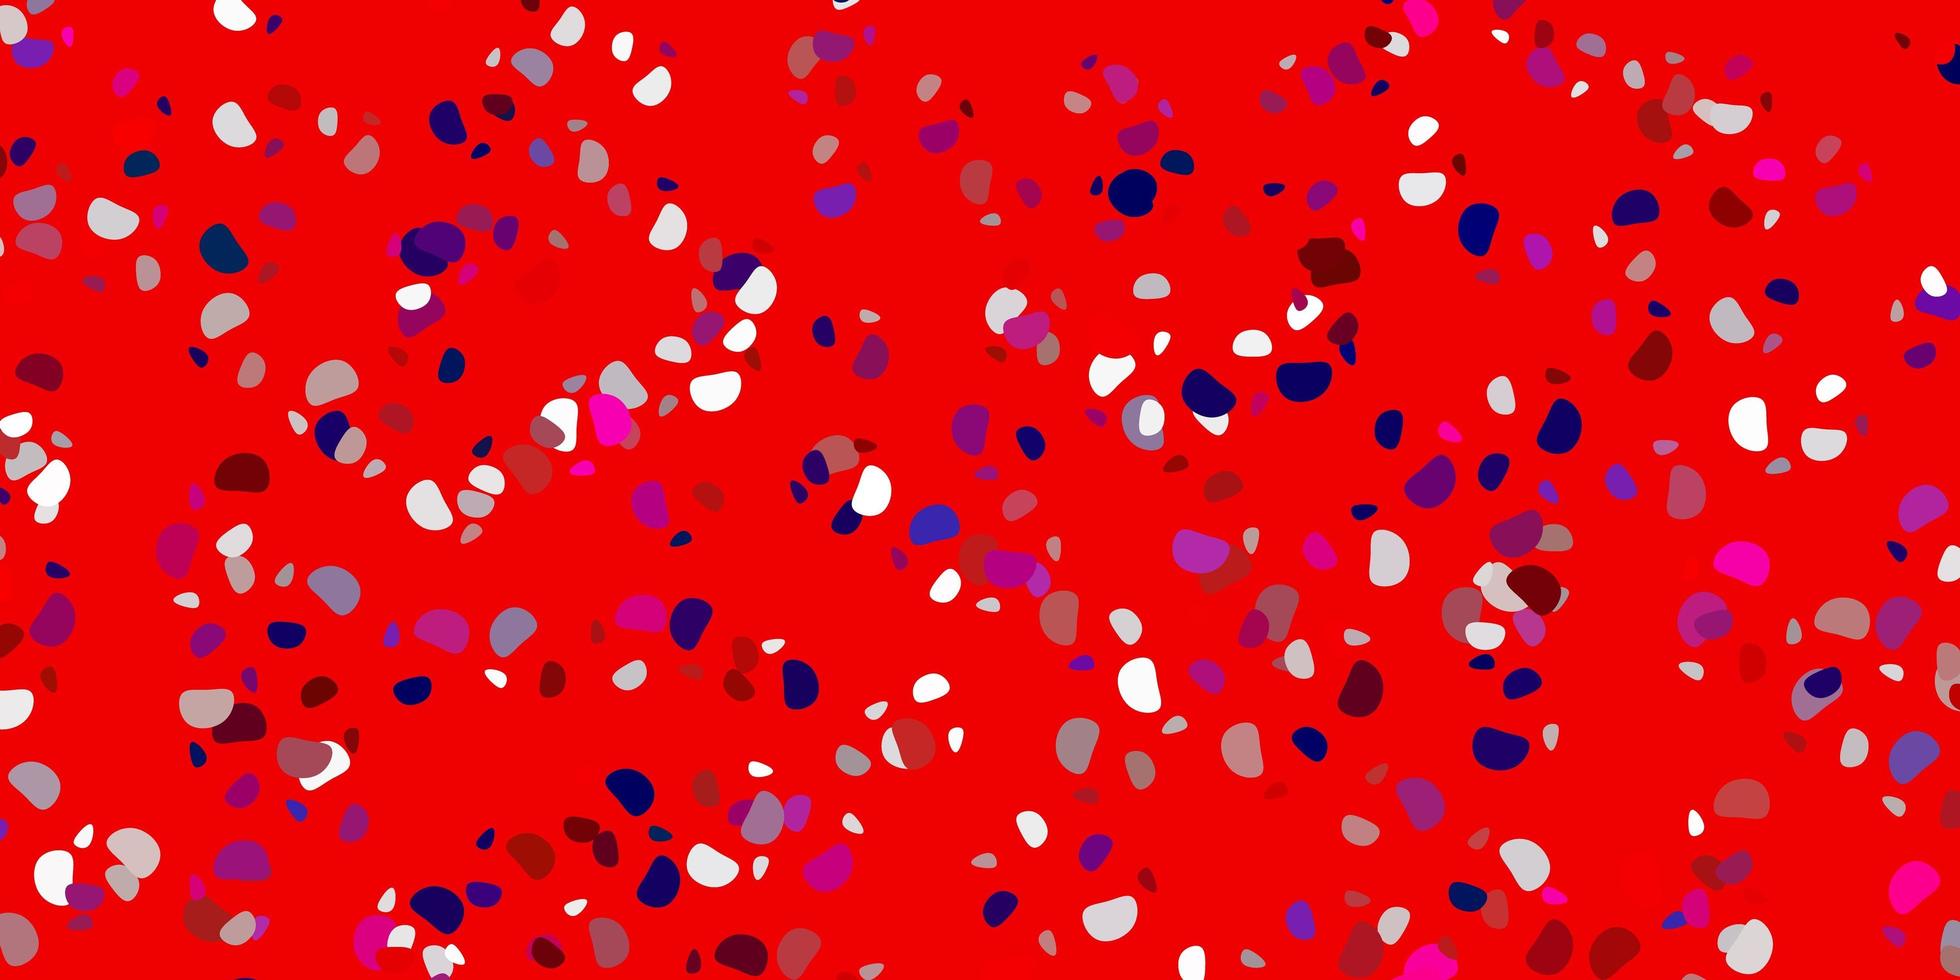 lichtblauwe, rode vectorachtergrond met chaotische vormen. vector